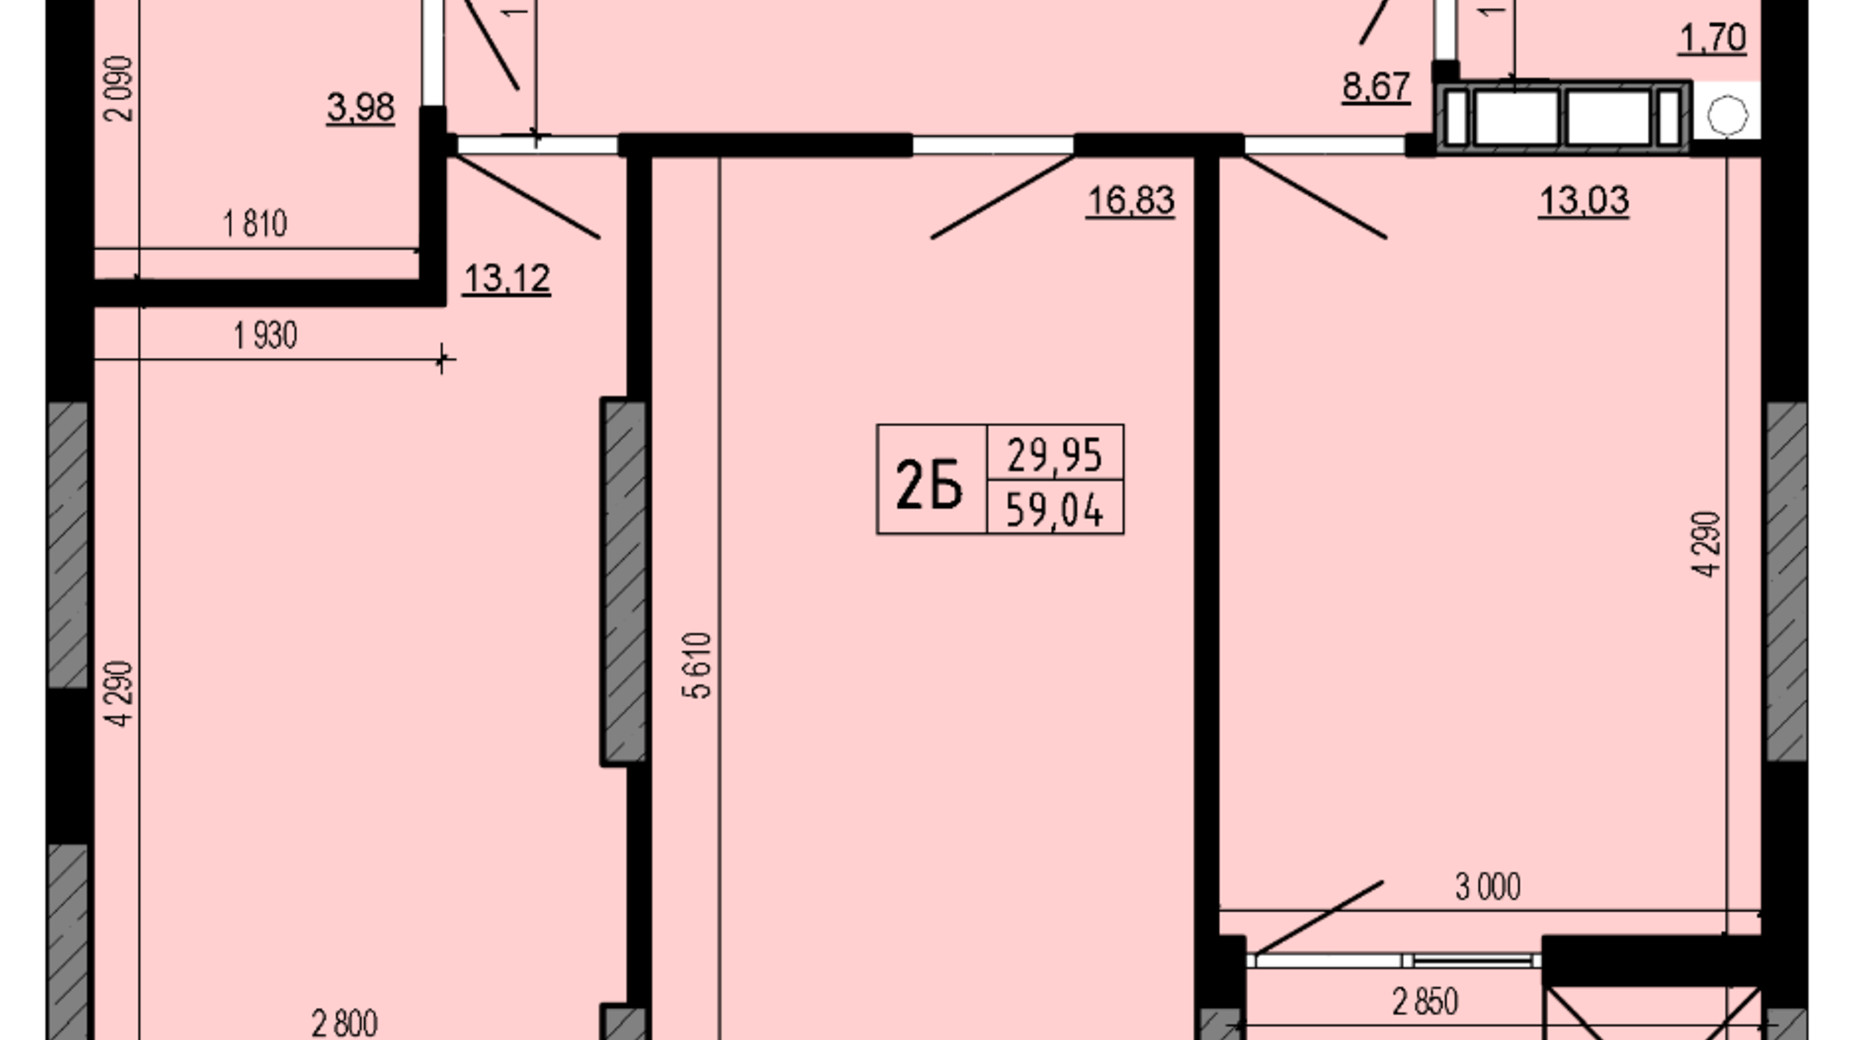 Планировка 2-комнатной квартиры в ЖК Hello House 59.04 м², фото 598922